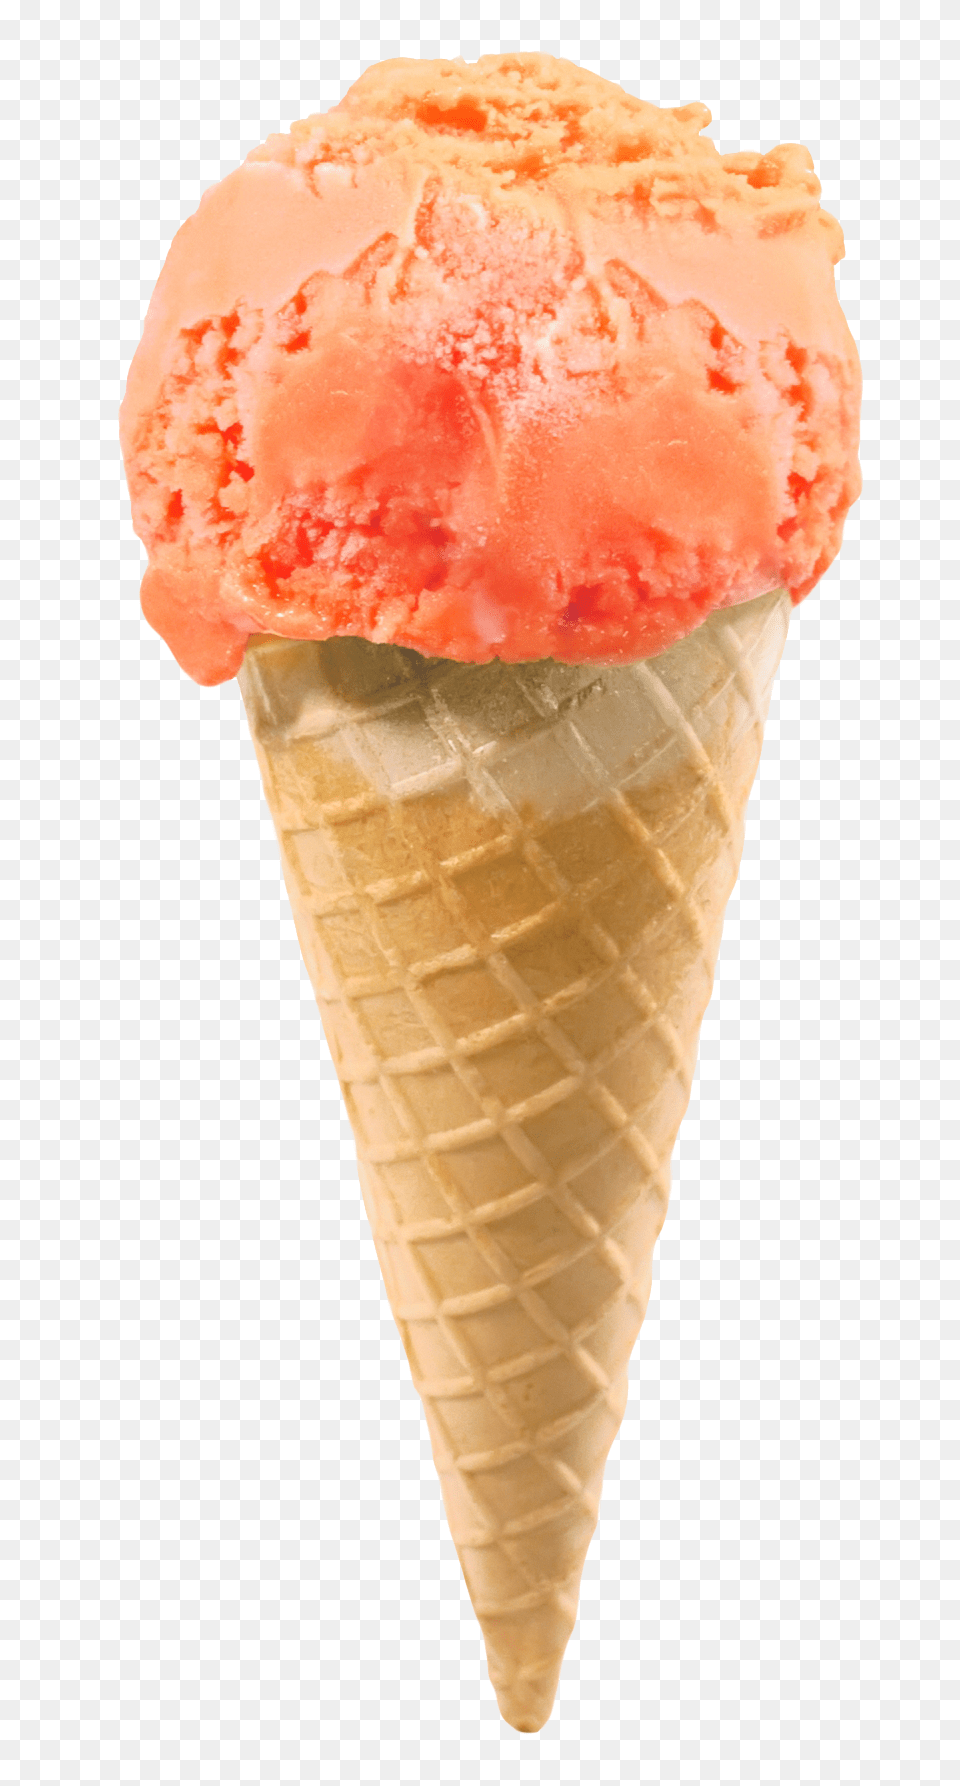 Pngpix Com Ice Cream Cone Transparent Image, Dessert, Food, Ice Cream, Soft Serve Ice Cream Png